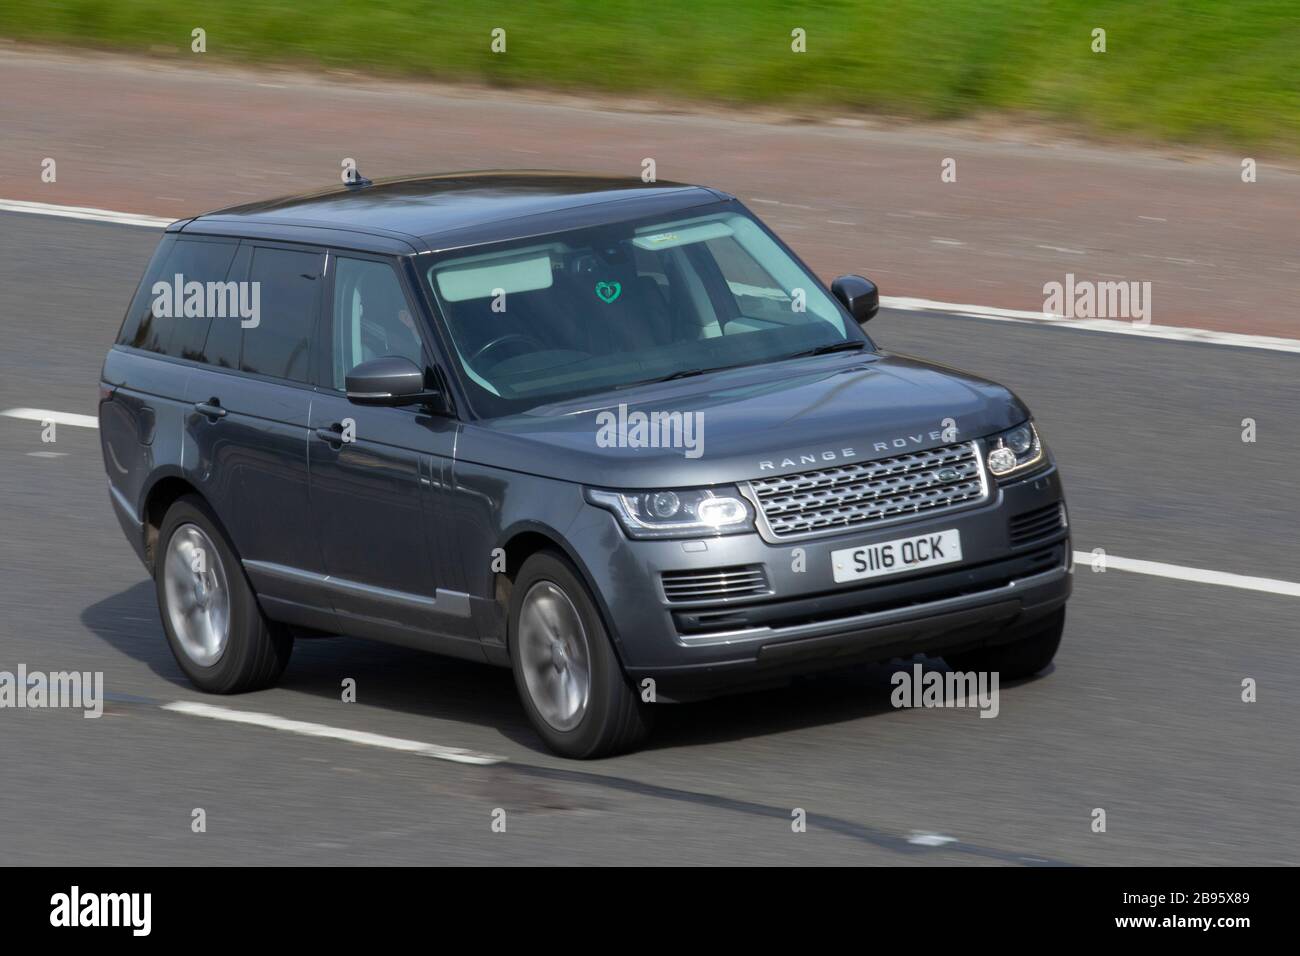 Range Rover Evoque gris; tráfico de vehículos del Reino Unido, transporte, vehículos en movimiento, vehículo, carreteras, motores, conducción en la autopista M6 Foto de stock